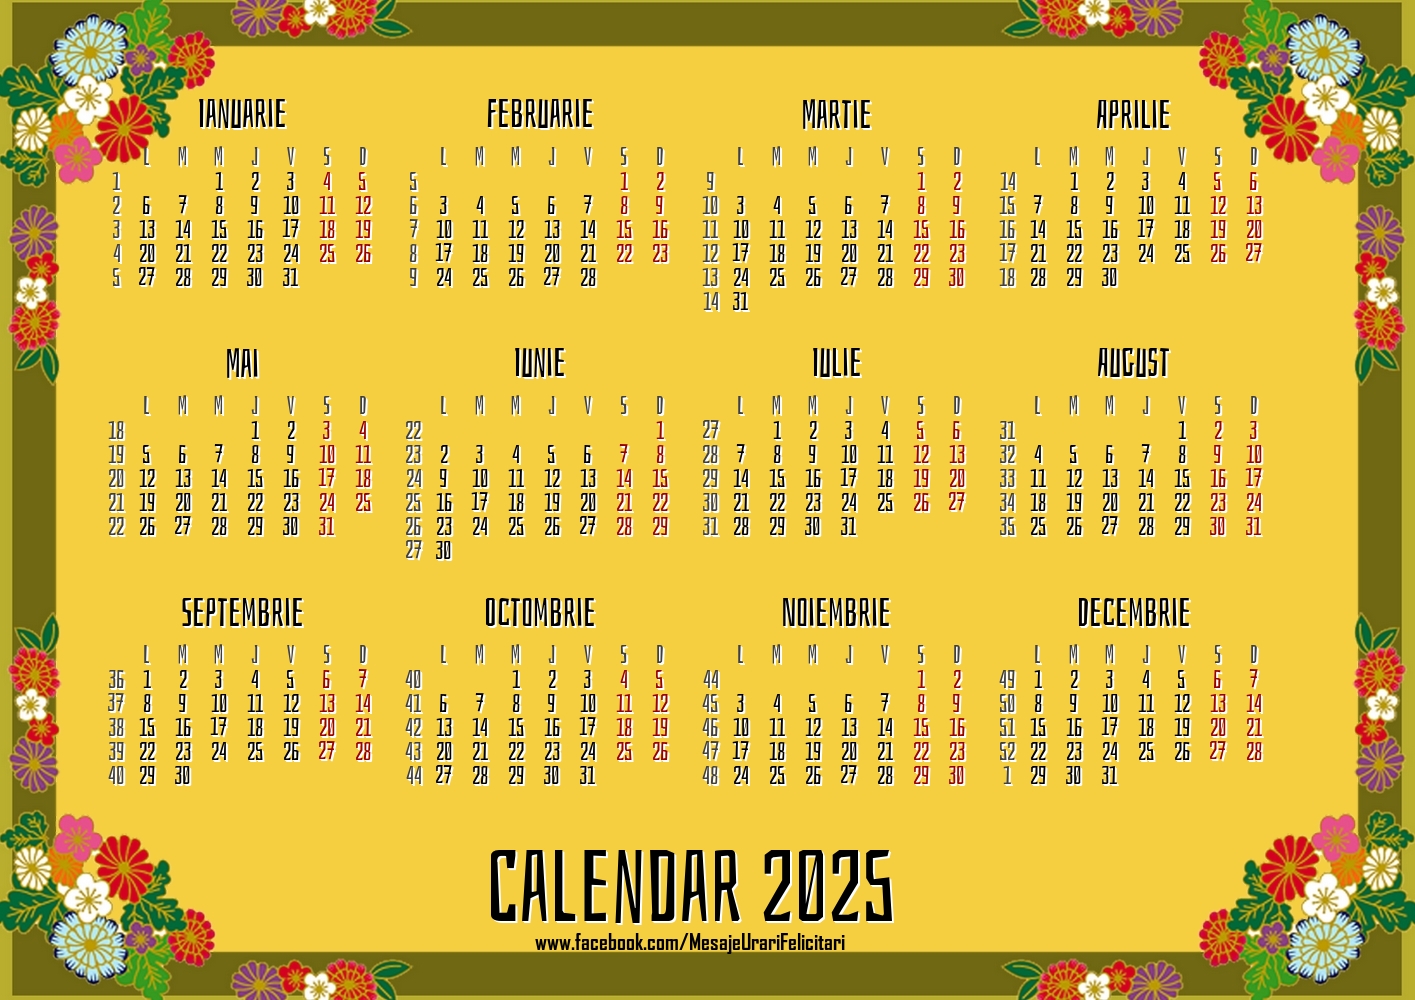 Imagini cu calendare - Calendar 2025 - Winter Vintage - Model 0086 - mesajeurarifelicitari.com